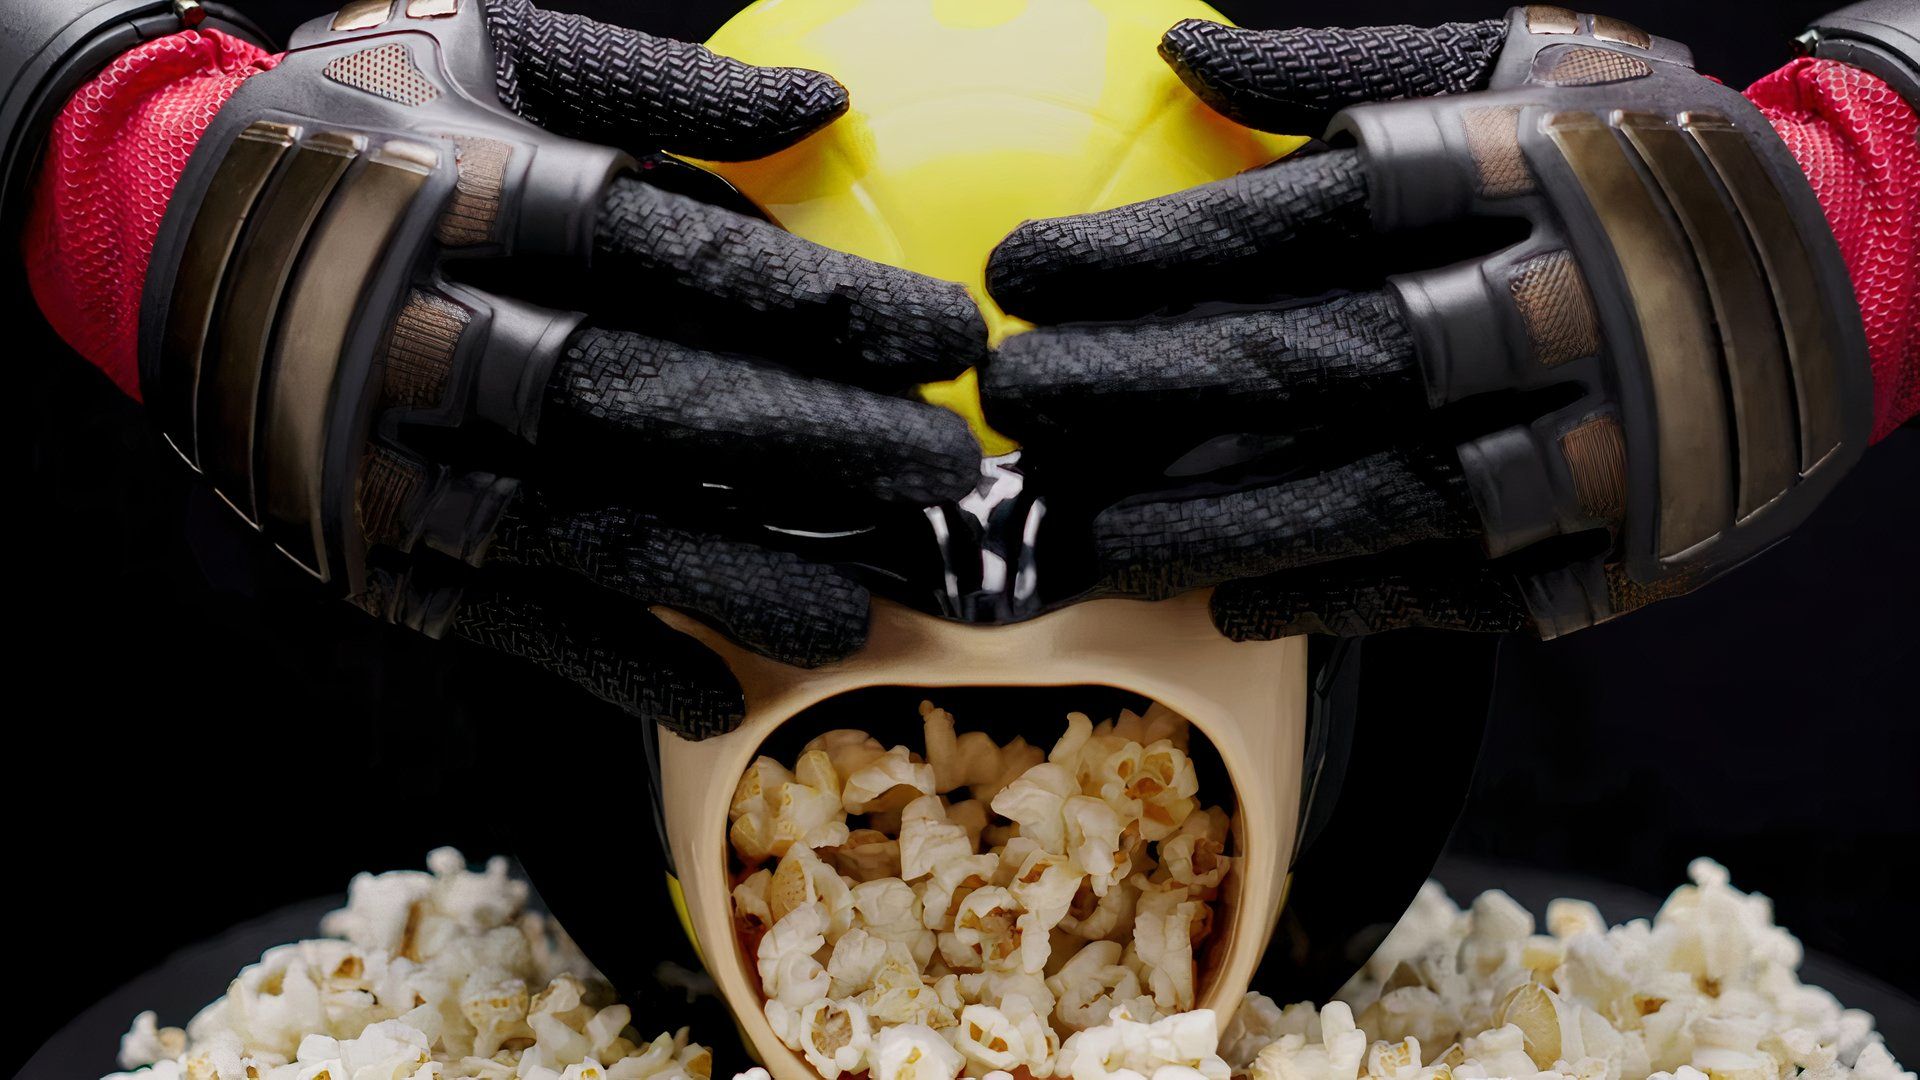 Deadpool & Wolverine Popcorn Bucket Reveal